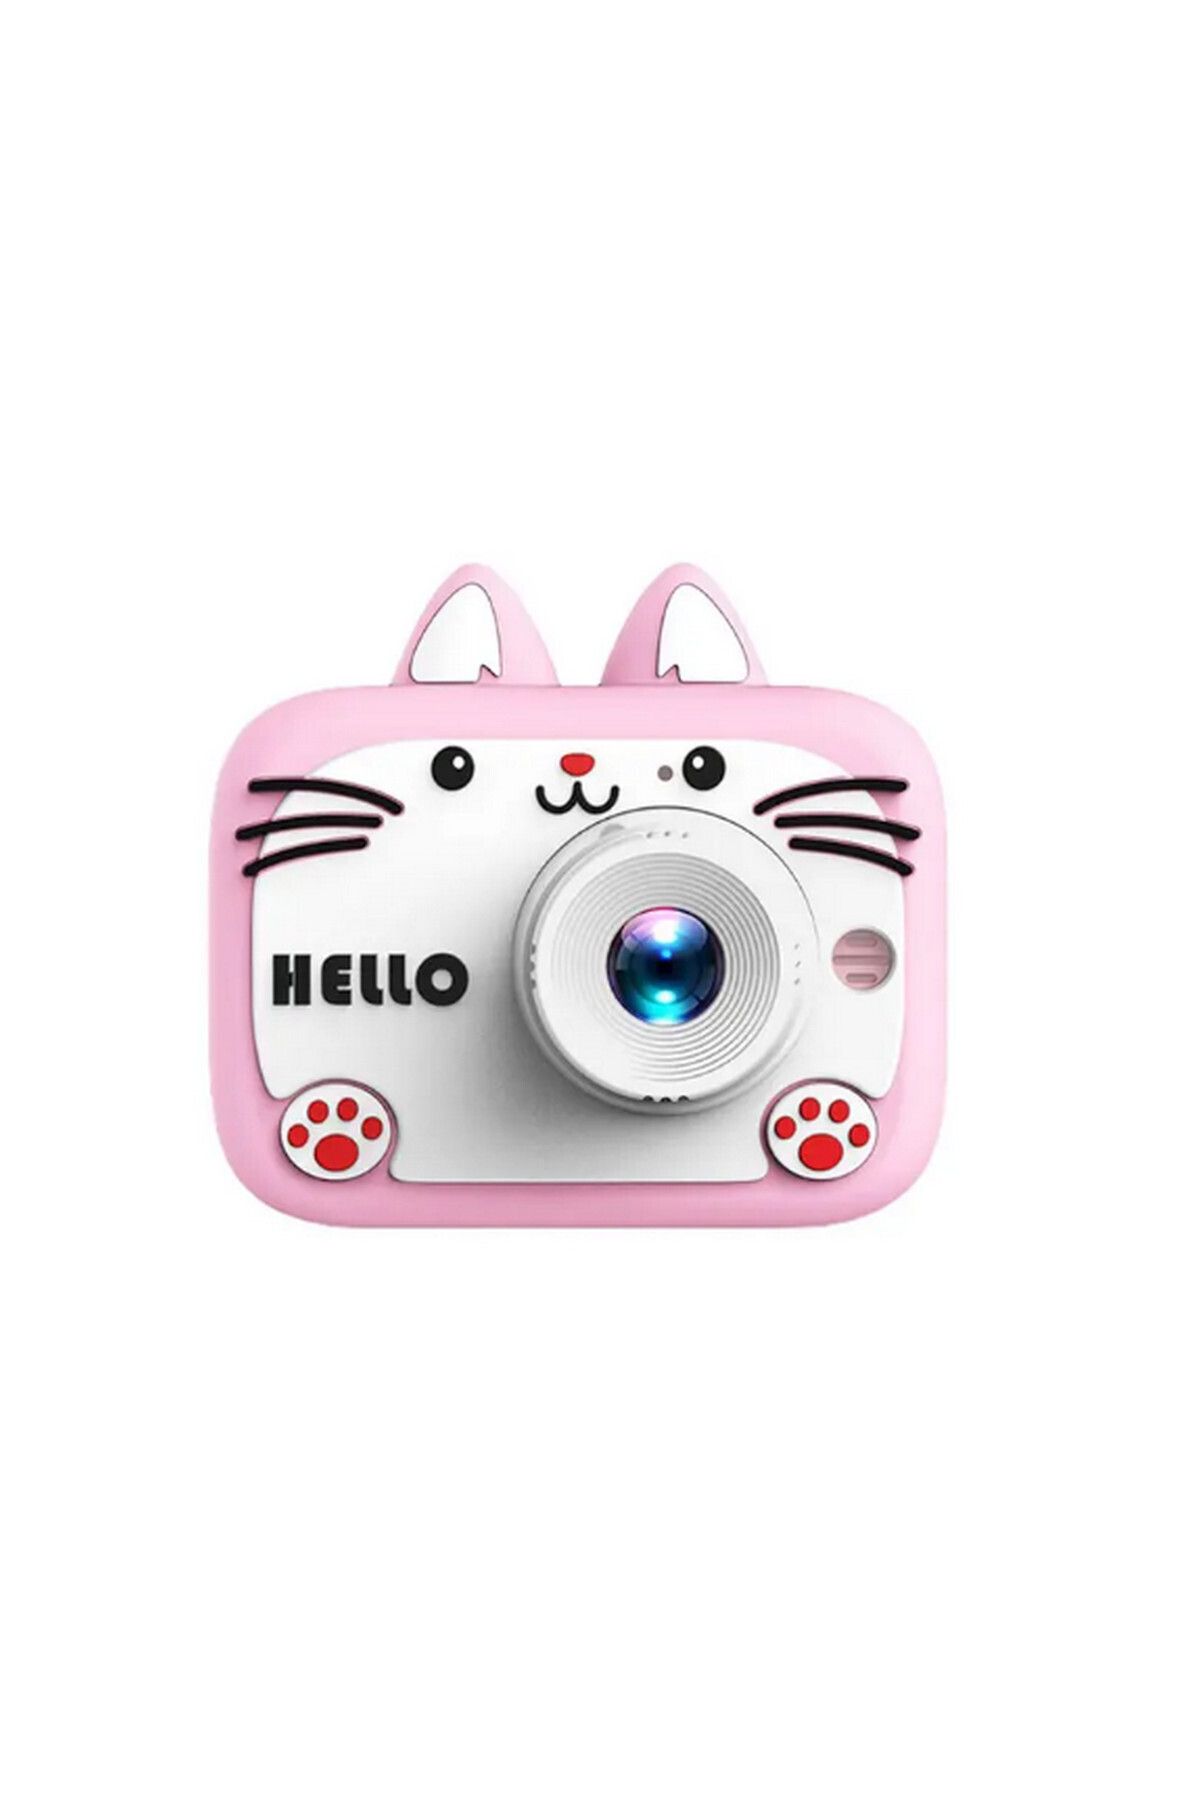 Vothoon Hello Çocuk Dijital Fotoğraf Makinası 20 MP Video Kaydedici 2.0 inç Çift Kameralı Ks-102